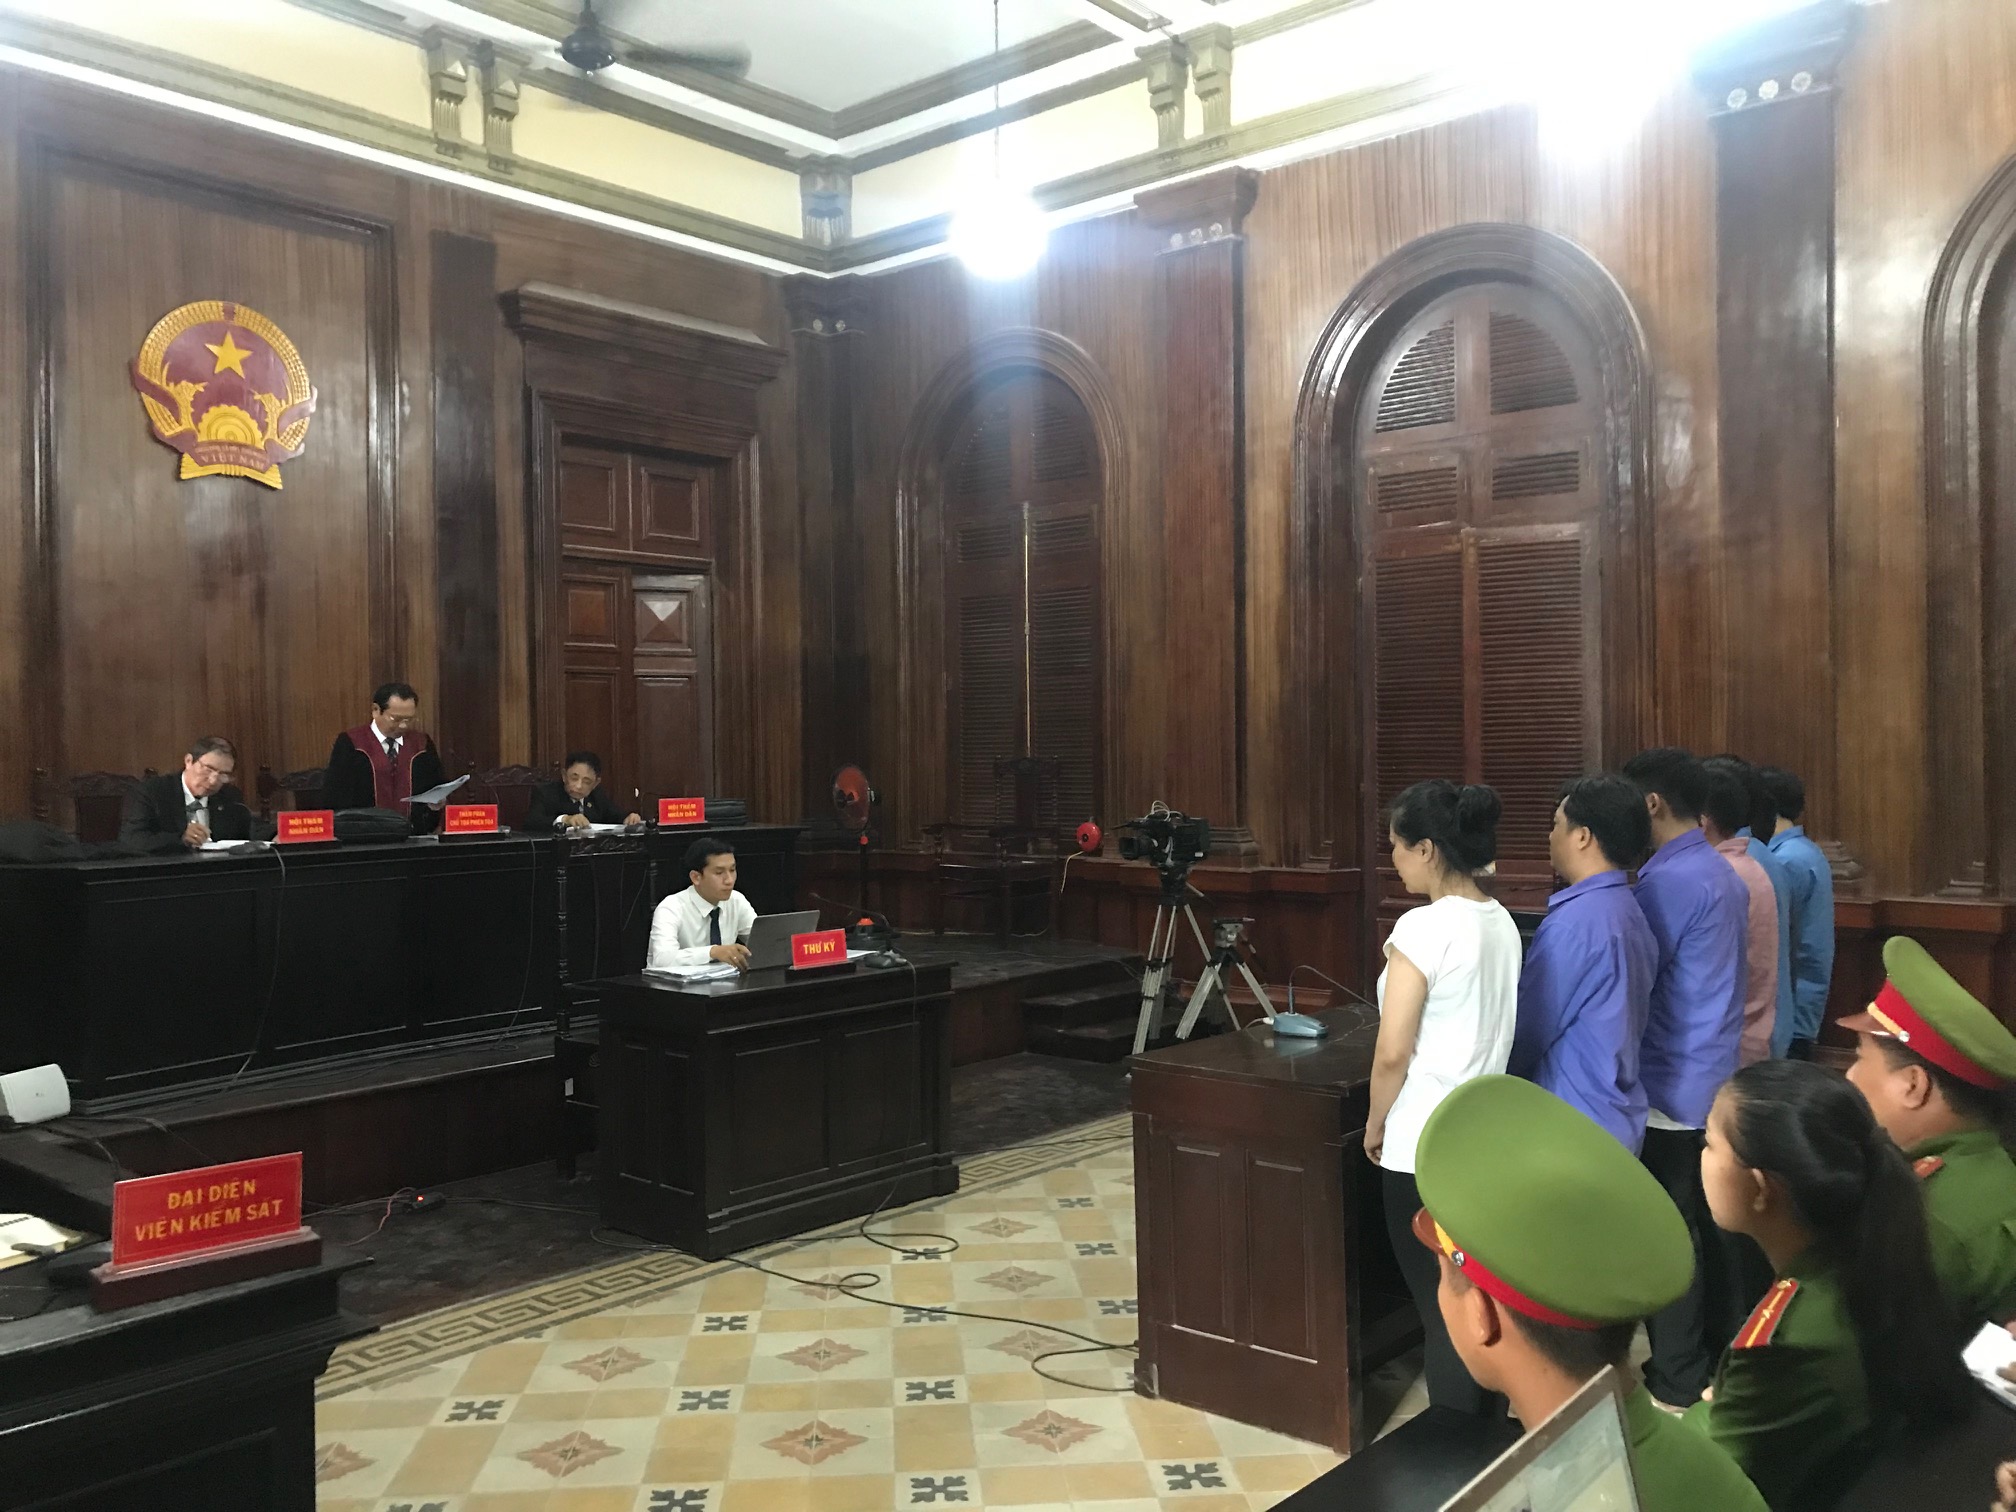 Vợ cũ chủ mưu chém chồng là bác sĩ Chiêm Quốc Thái lãnh 18 tháng tù